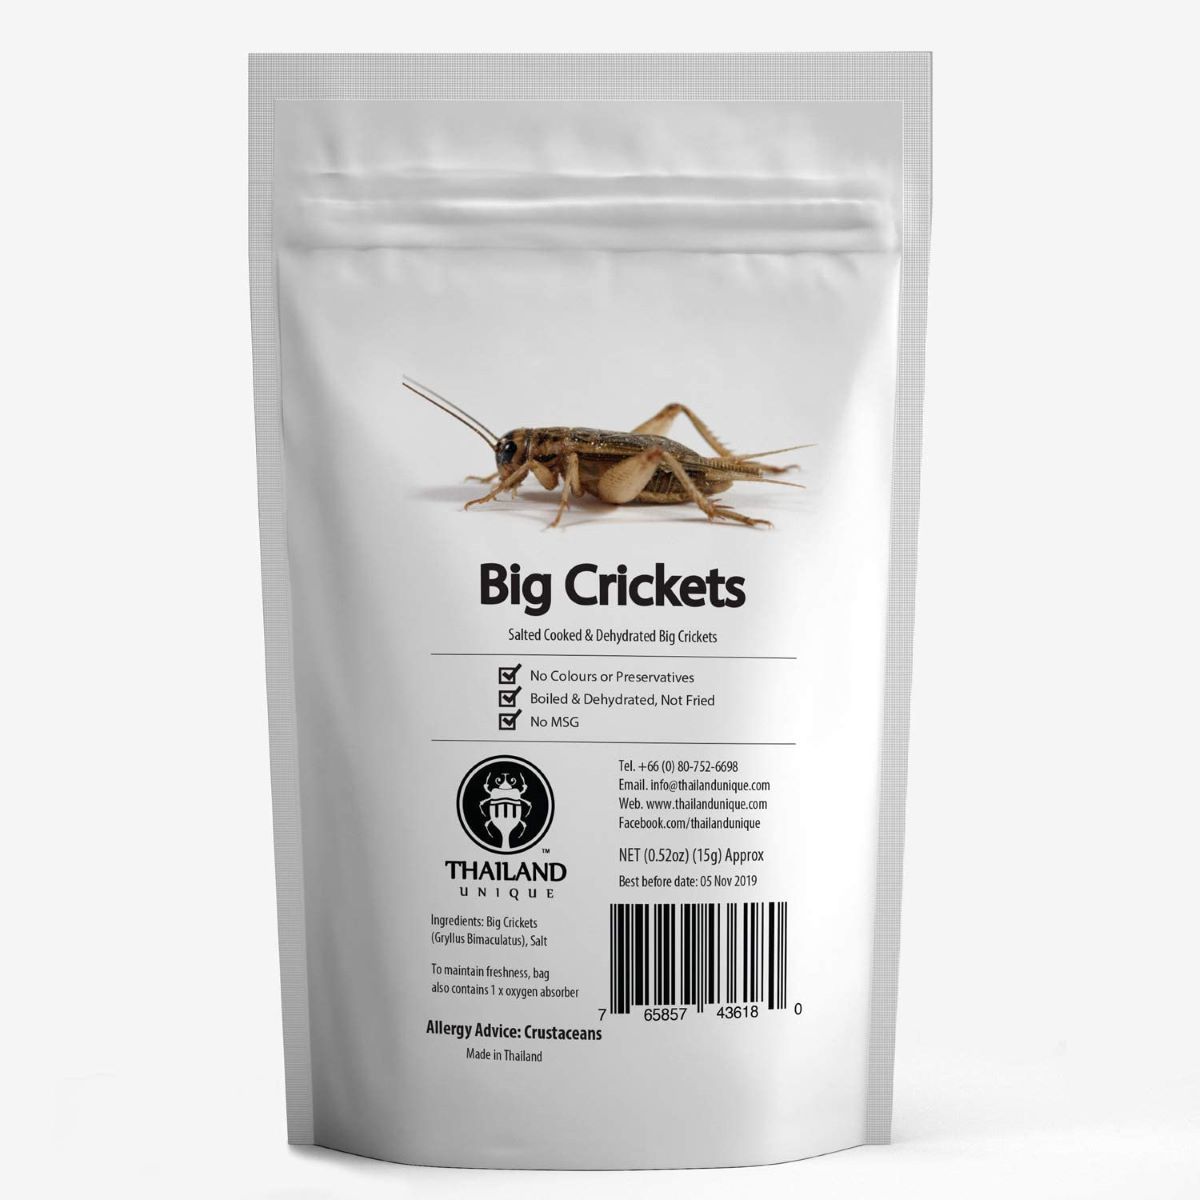 食用 コオロギ 昆虫食 食用 フタホシコオロギ15g (Big Crickets15g) 昆虫食